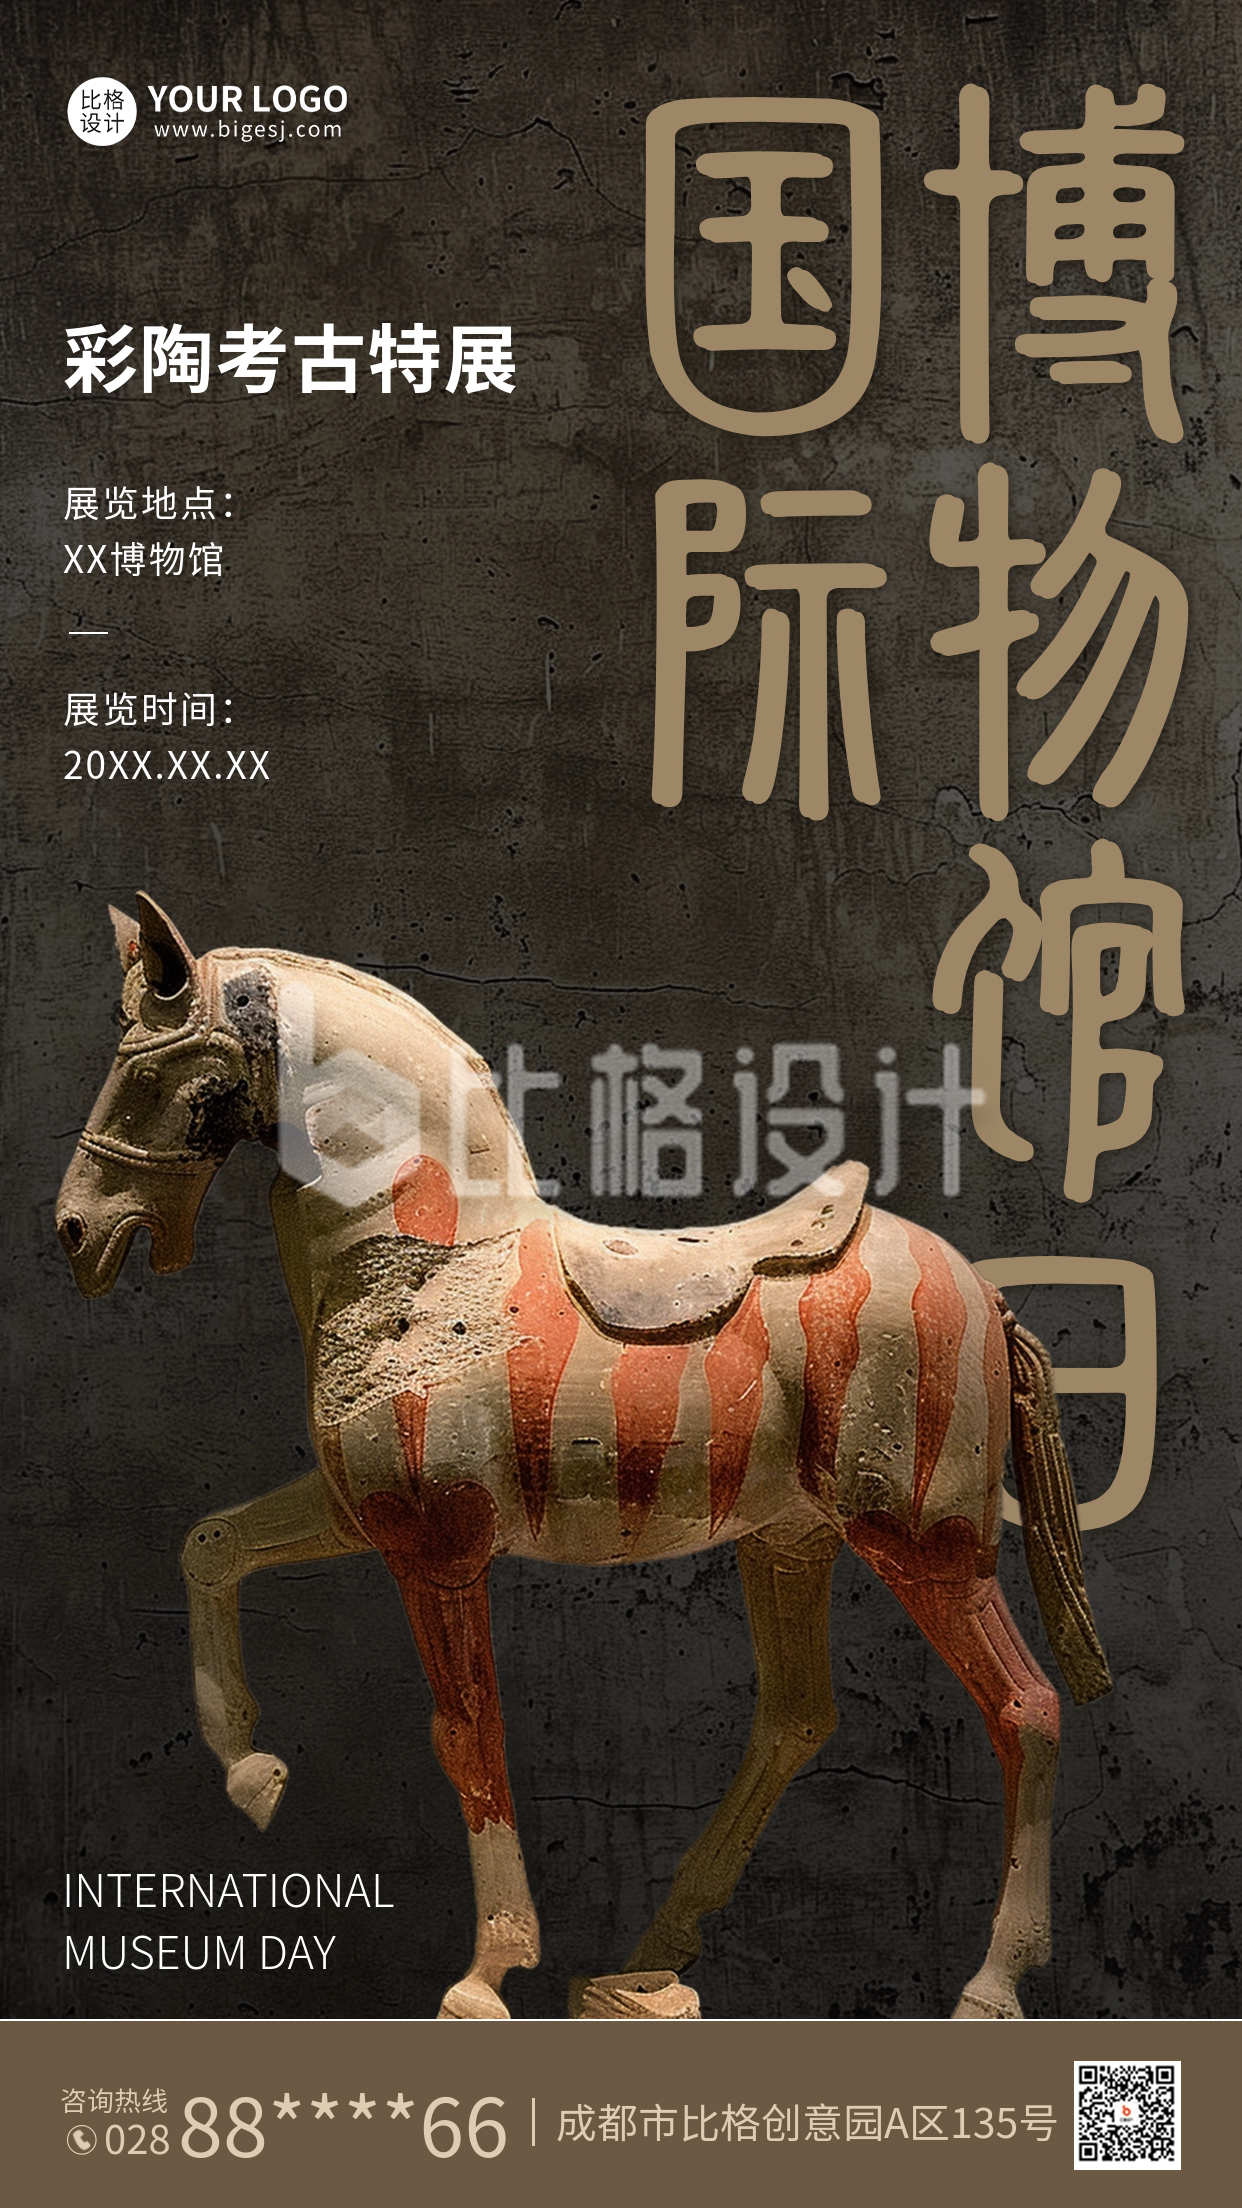 国际博物馆日彩陶展览宣传海报